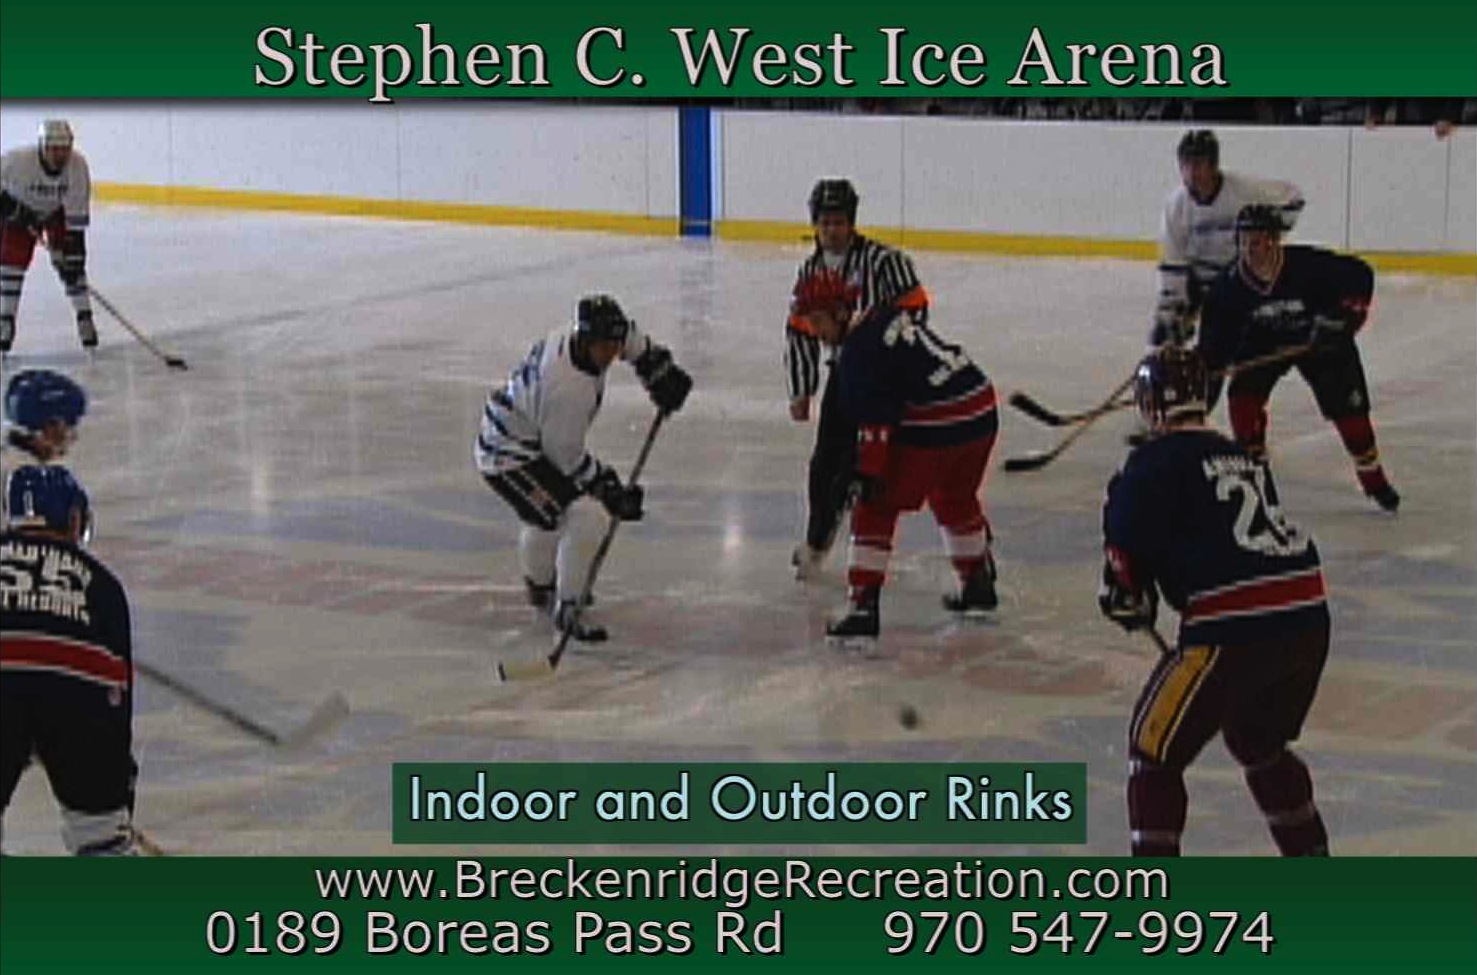 Stephen C. West Ice Arena